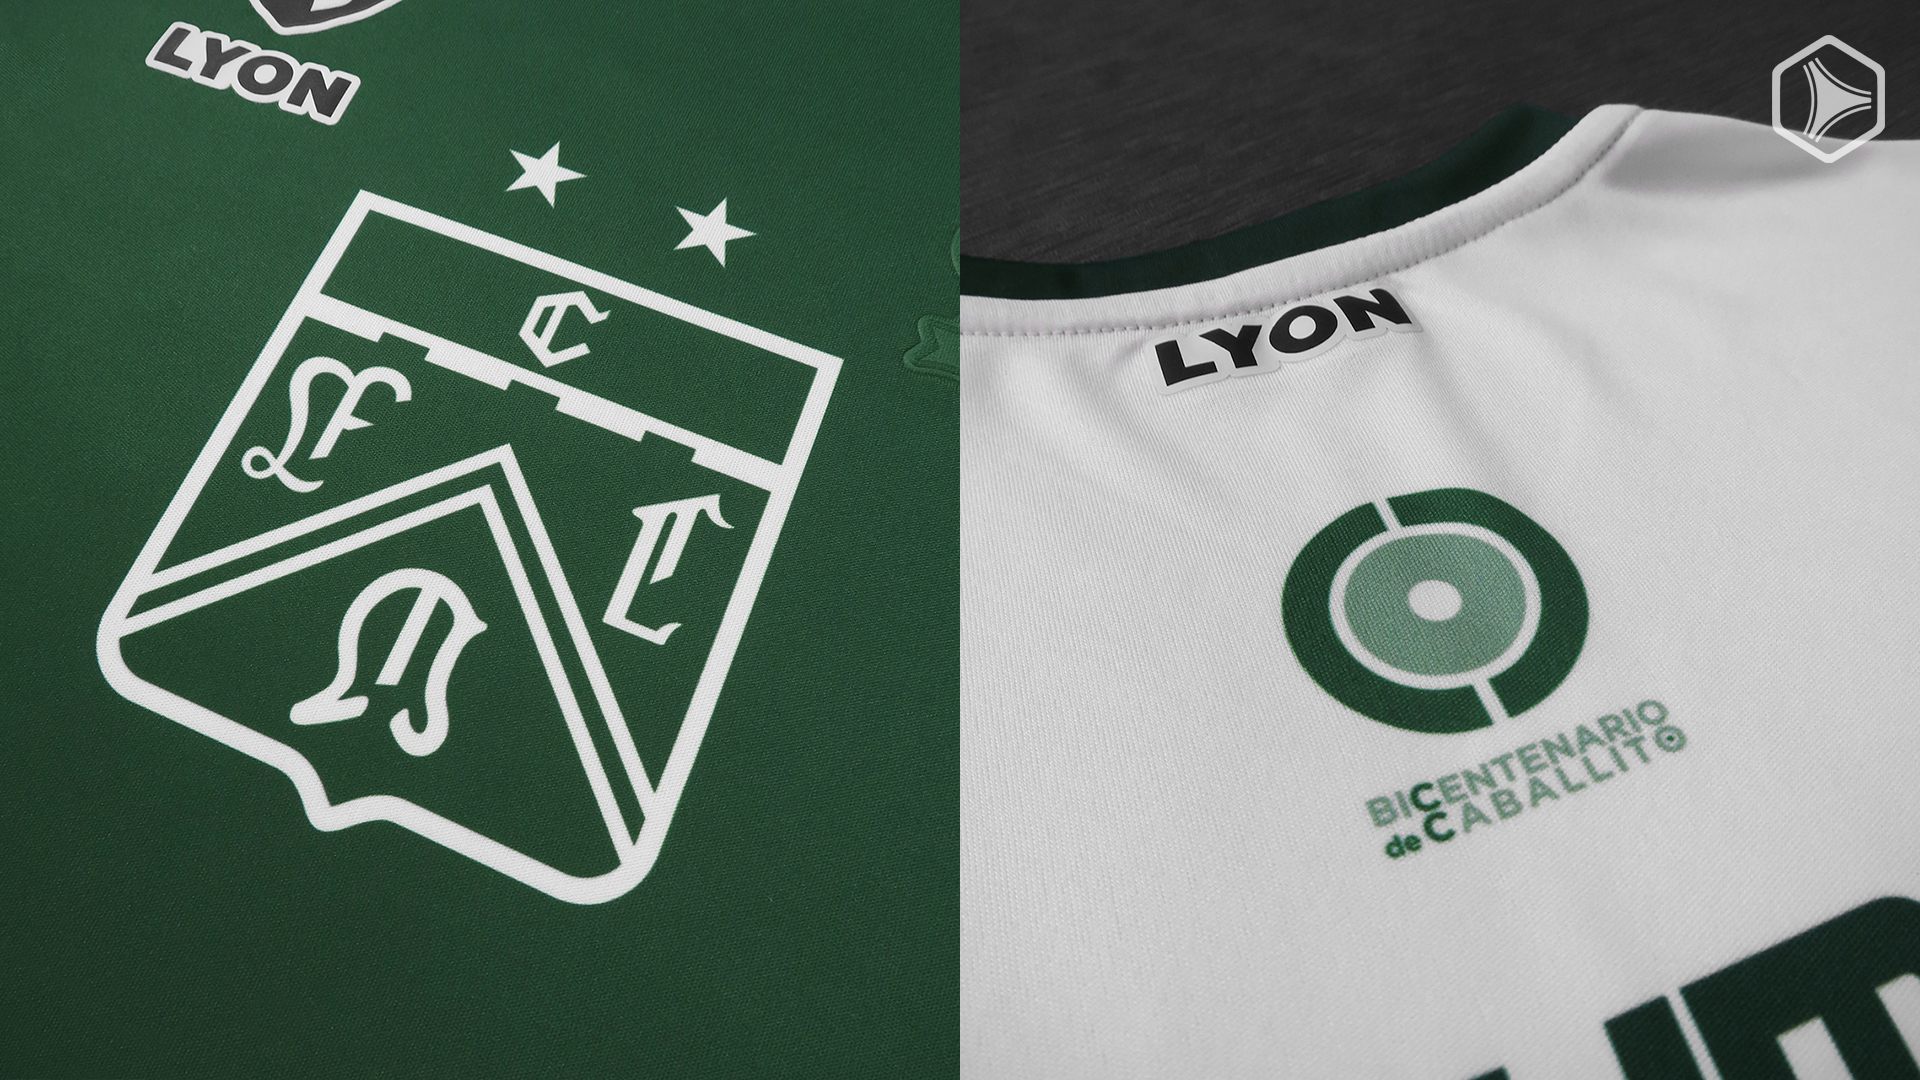 Novas camisas do Ferro Carril 2021 Sport Lyon » Mantos do Futebol